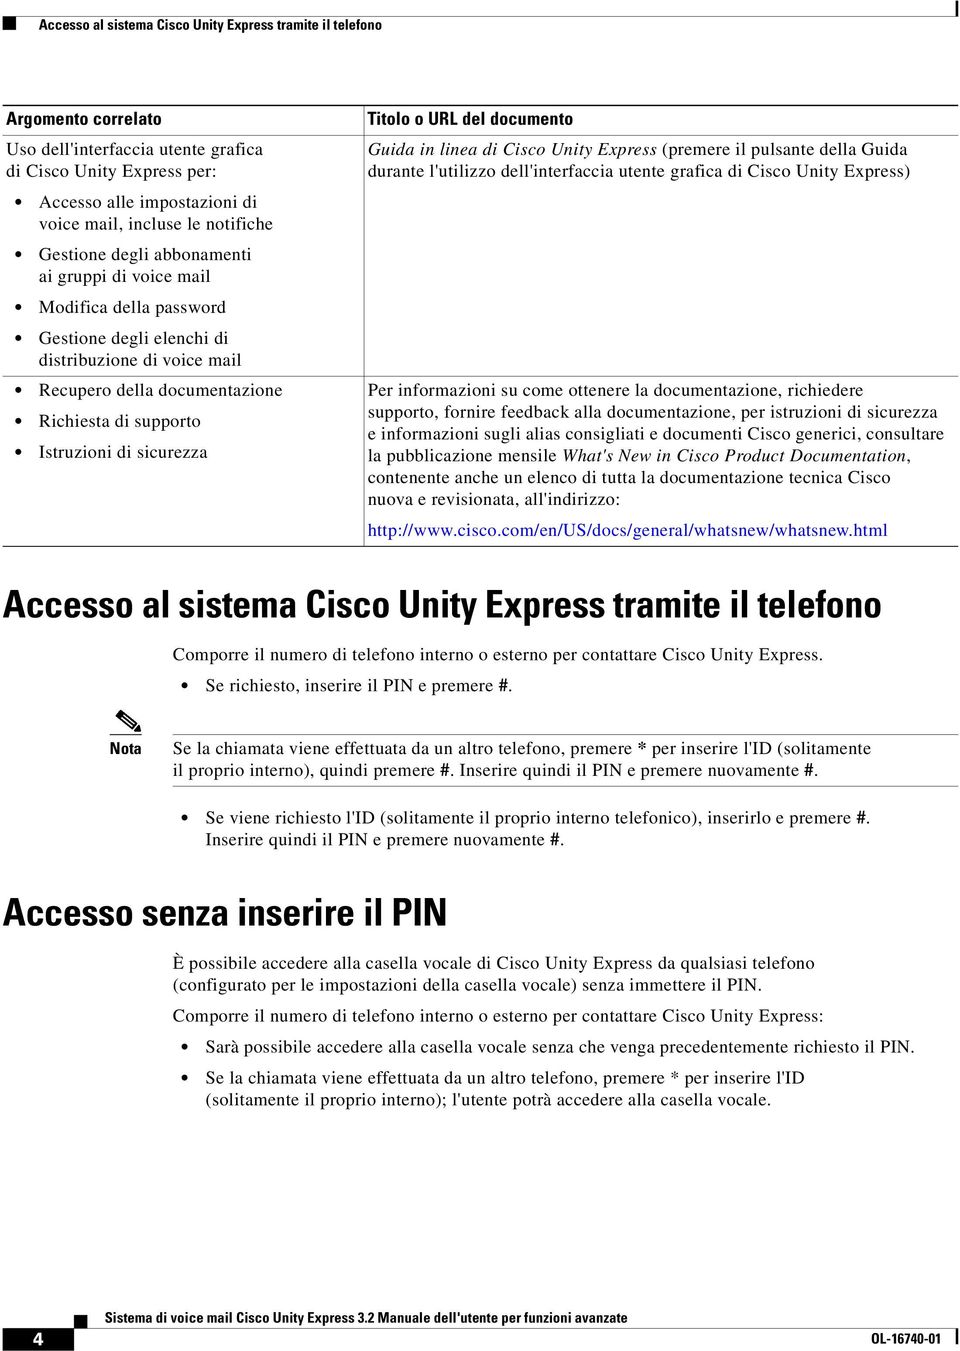 Istruzioni di sicurezza Titolo o URL del documento Guida in linea di Cisco Unity Express (premere il pulsante della Guida durante l'utilizzo dell'interfaccia utente grafica di Cisco Unity Express)